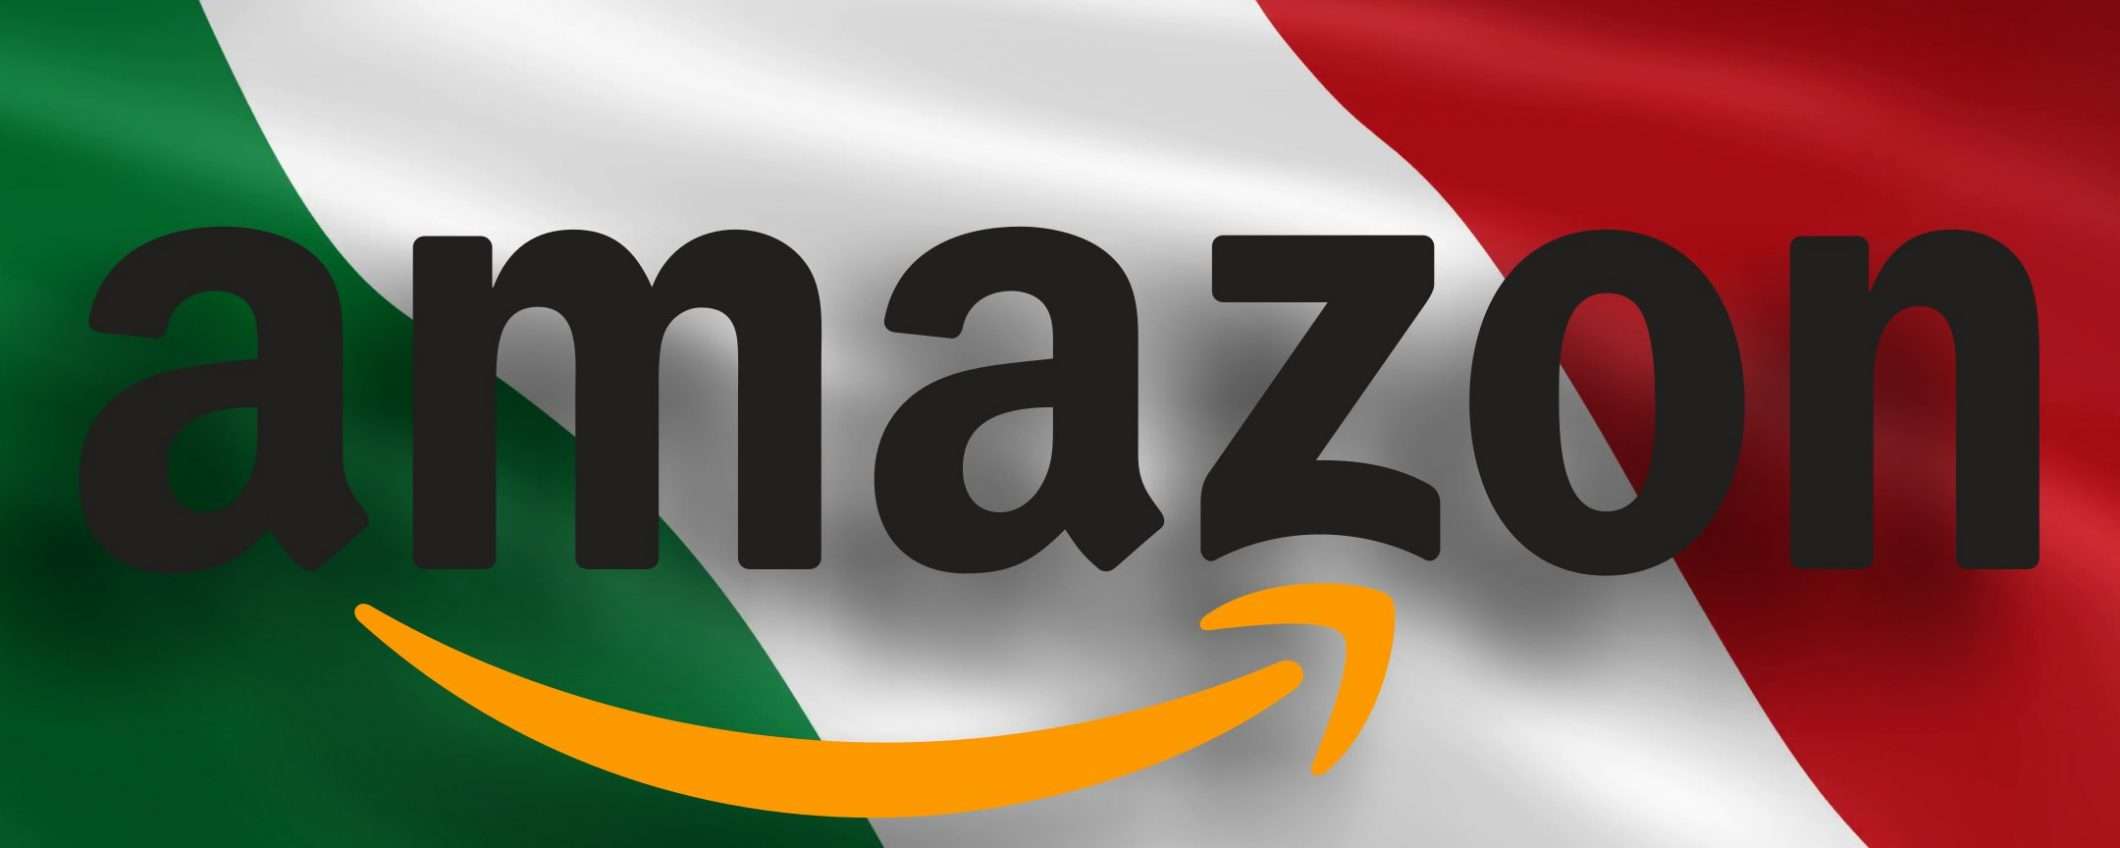 Amazon attiva a Torino il servizio Consegna Oggi